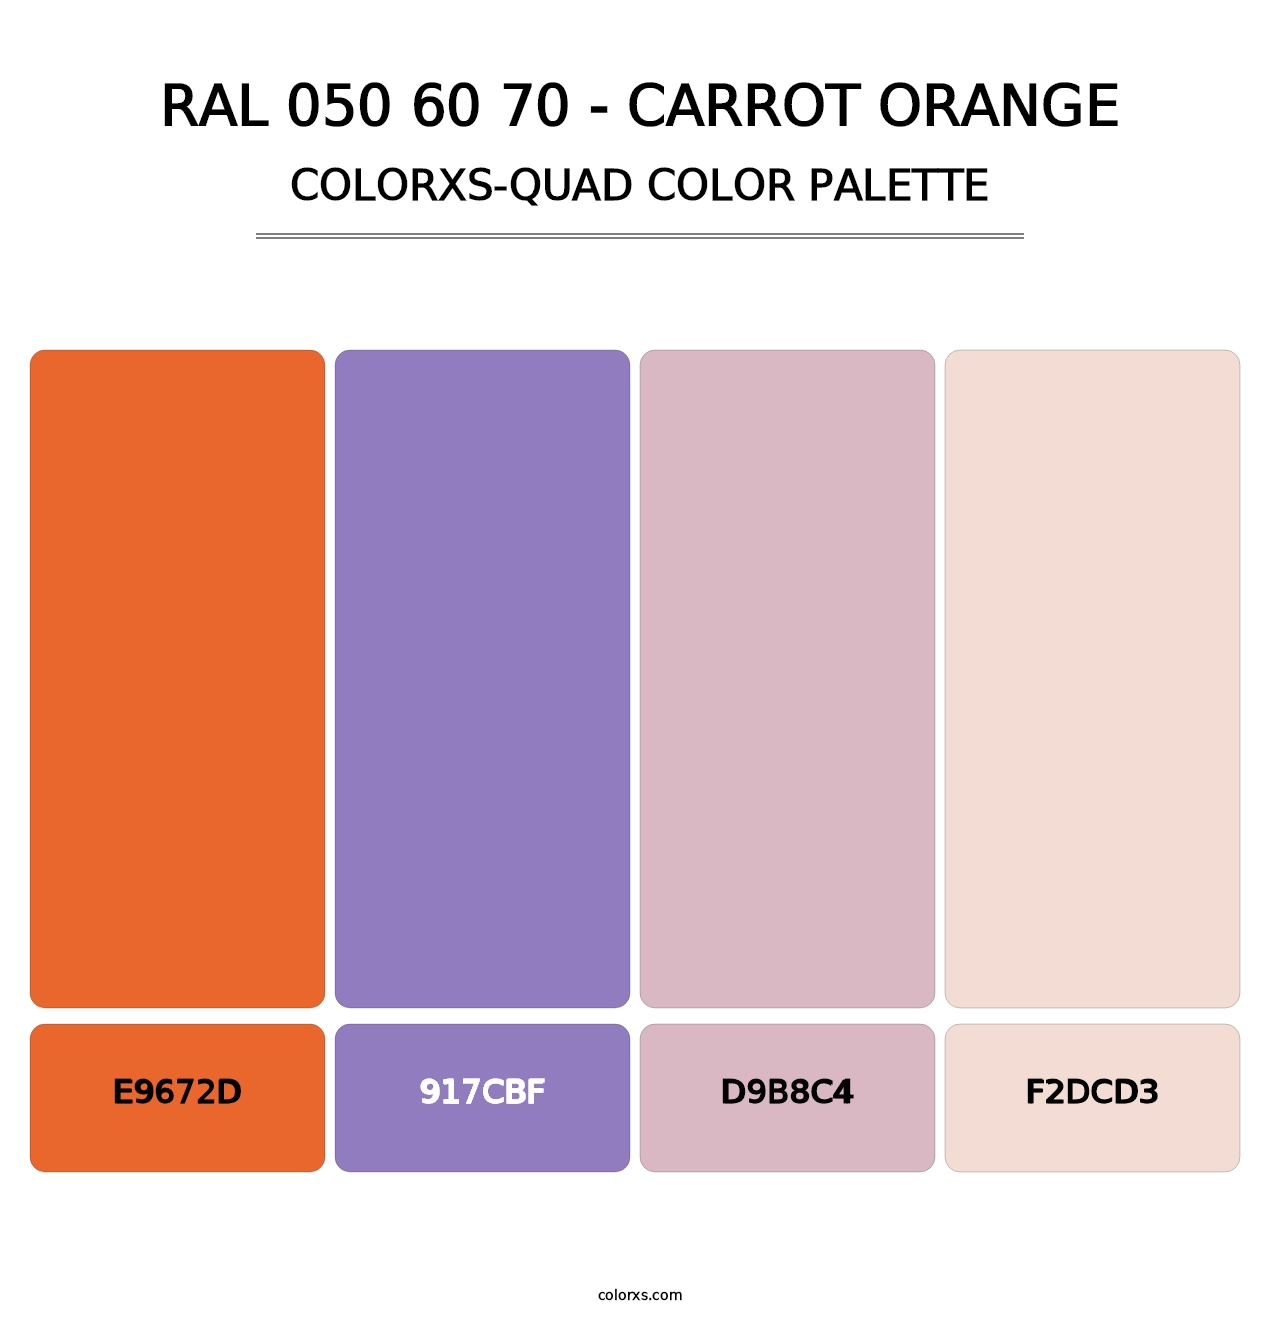 RAL 050 60 70 - Carrot Orange - Colorxs Quad Palette